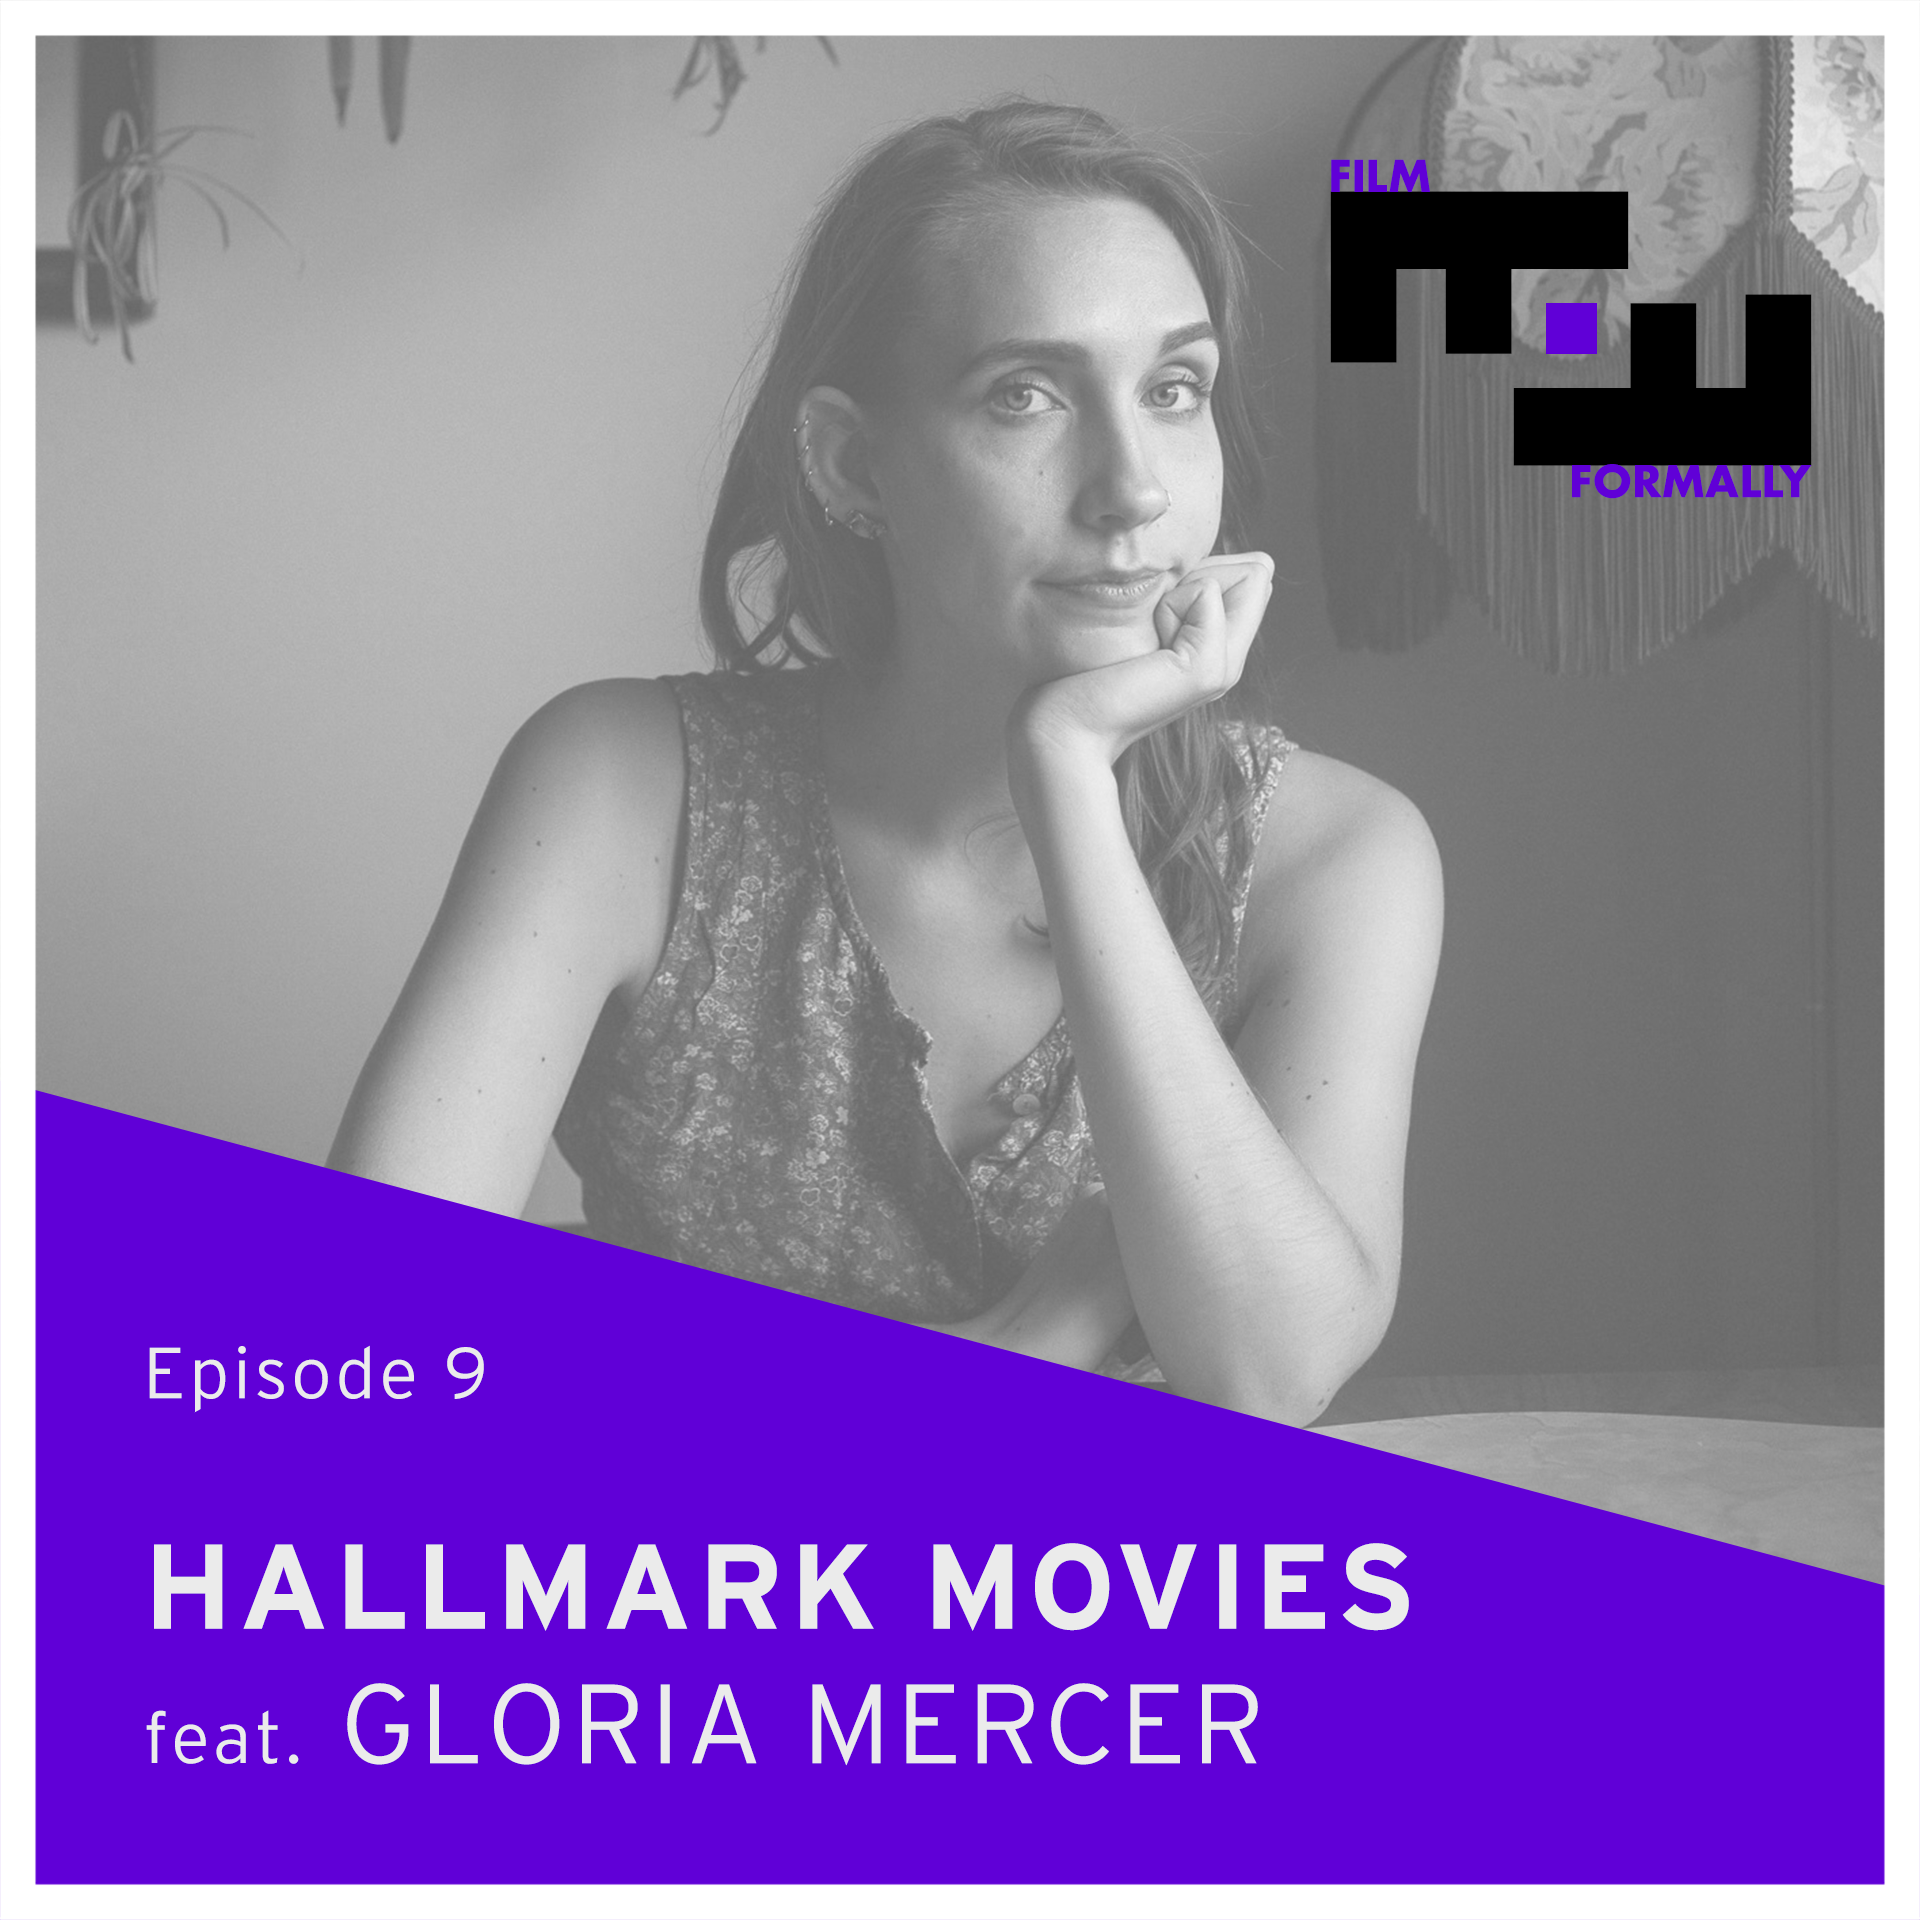 Hallmark Movies/Gloria Mercer